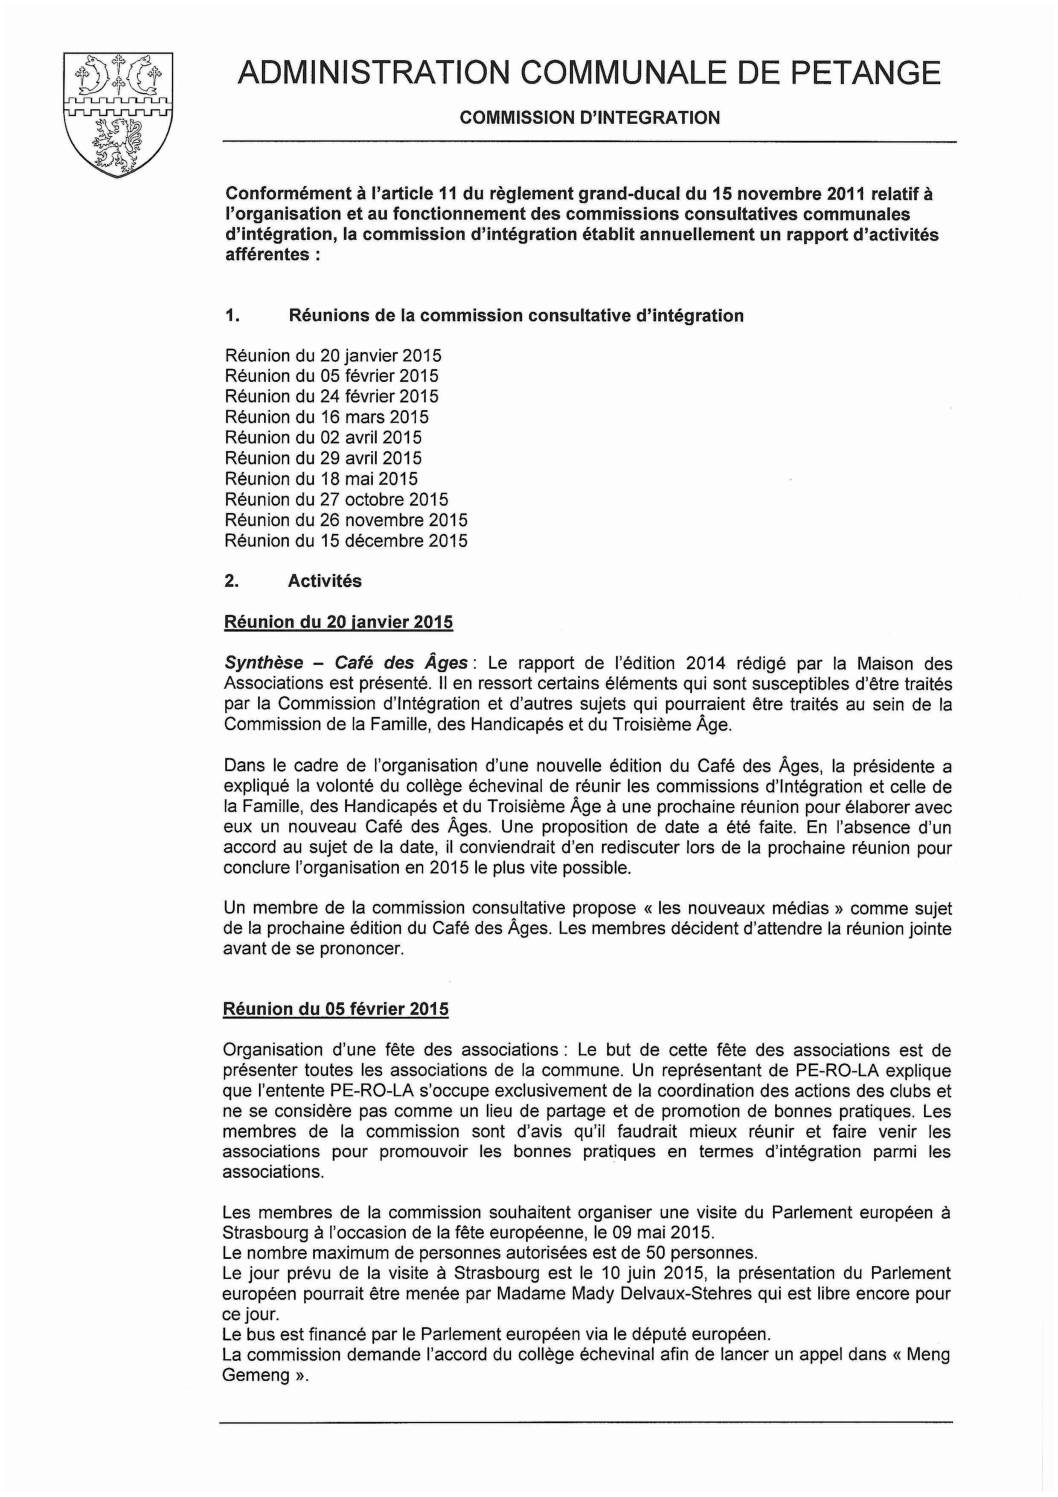 Commission d'intégration de la commune de Pétange - Rapport annuel 2015